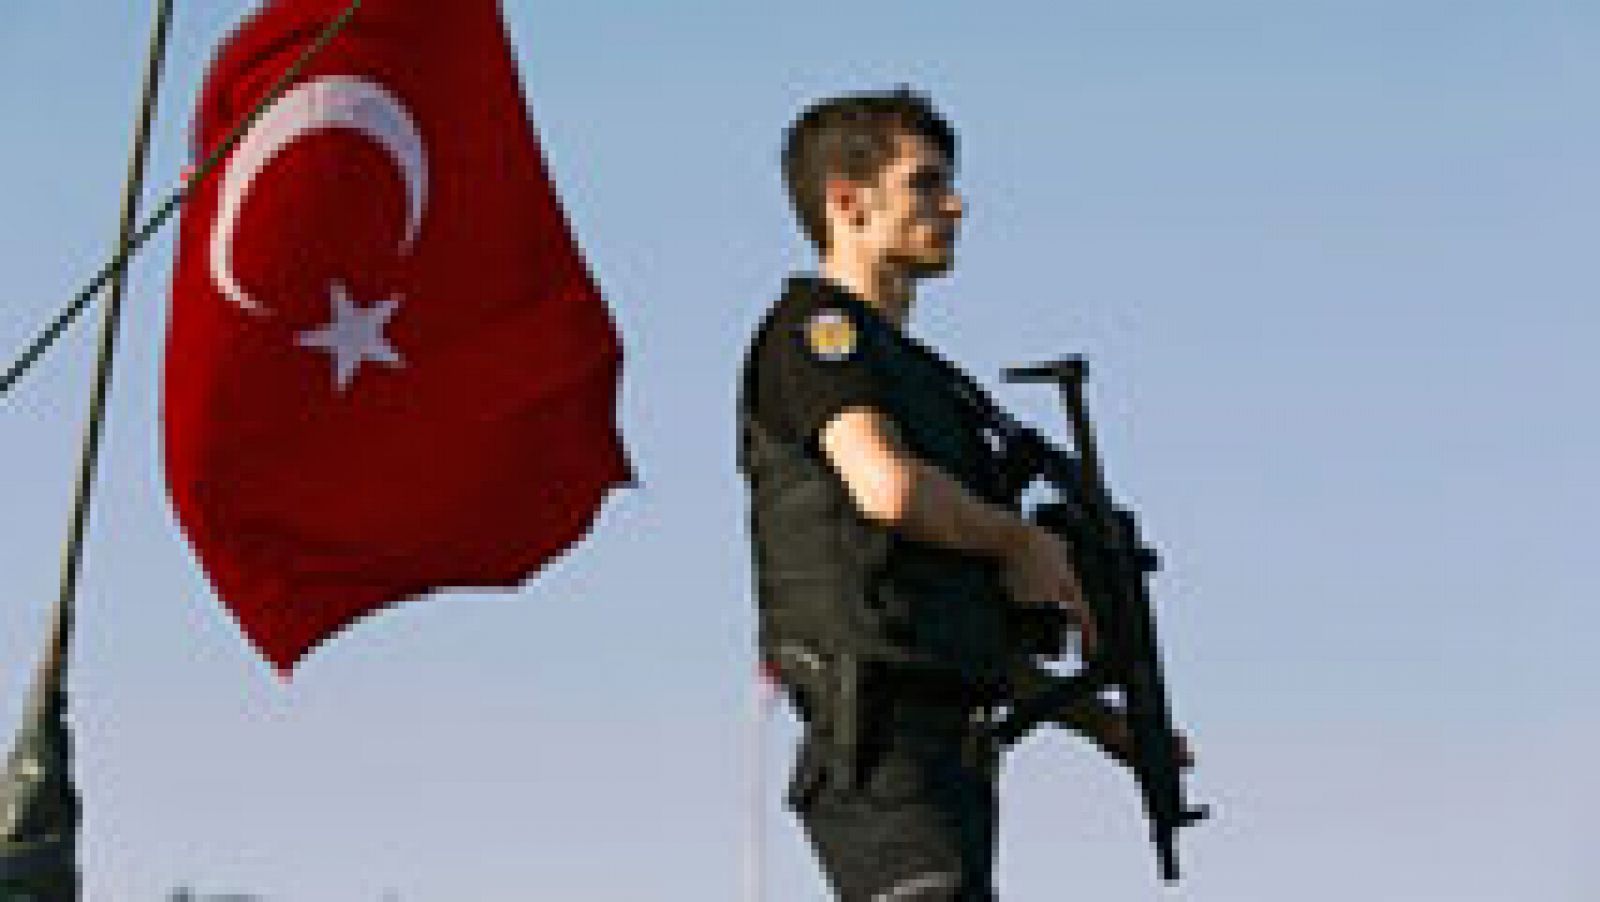 La intentona golpista de Turquía, abortada por el Gobierno de Erdogan después de varias horas de enfrentamientos, se ha saldado con al menos 181 fallecidos (20 de los cuales eran rebeldes), 1.440 personas heridas y 2.839 militares detenidos, según ha